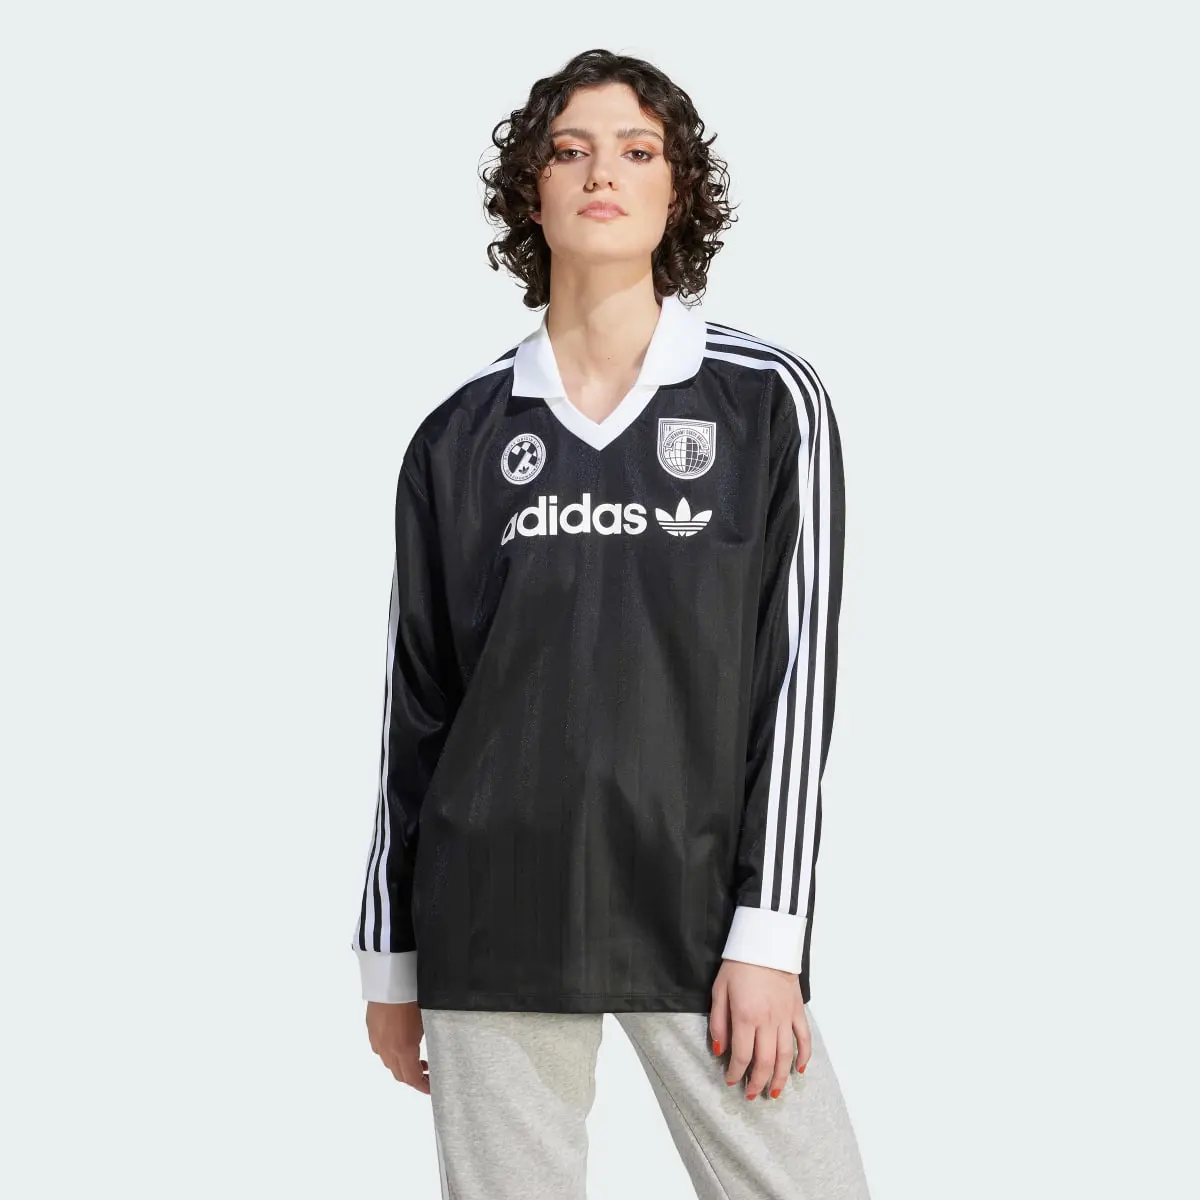 Adidas Football Long-Sleeve Top. 2